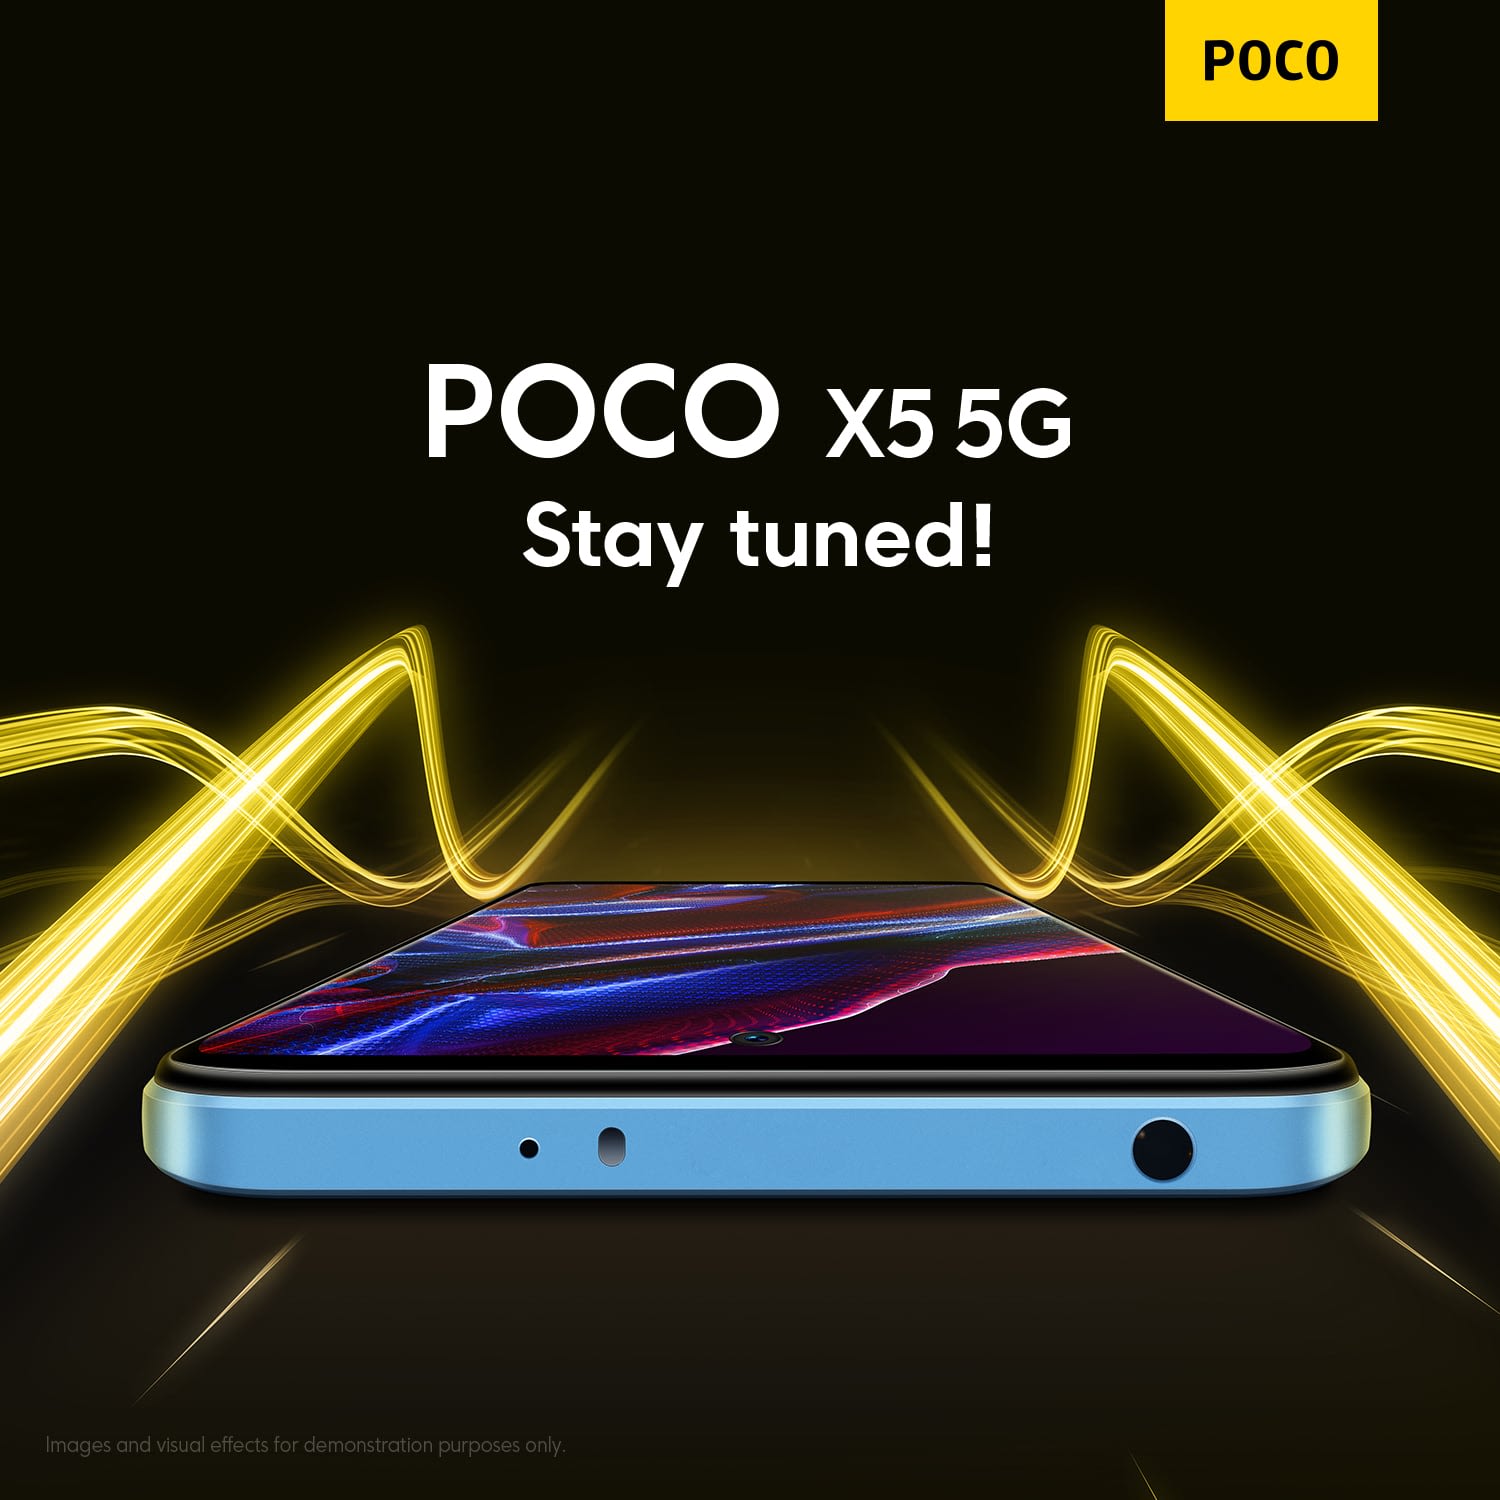 POCO X5 Pro 5G Flow Amoled Malaysia